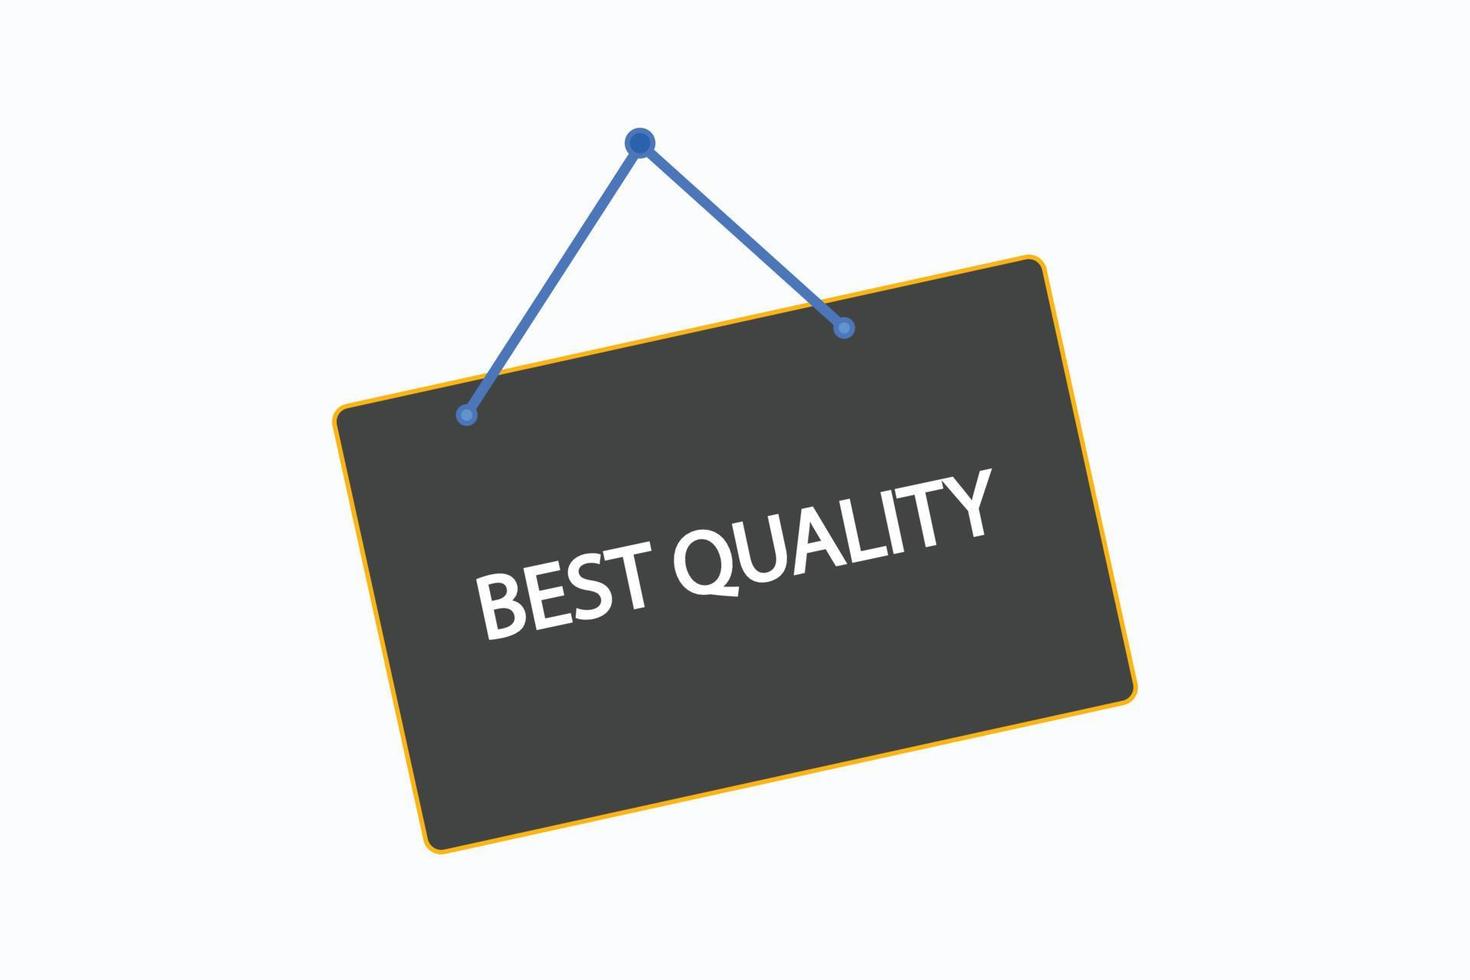 beste Qualität Schaltfläche vectors.sign Label Sprechblasebeste Qualität vektor